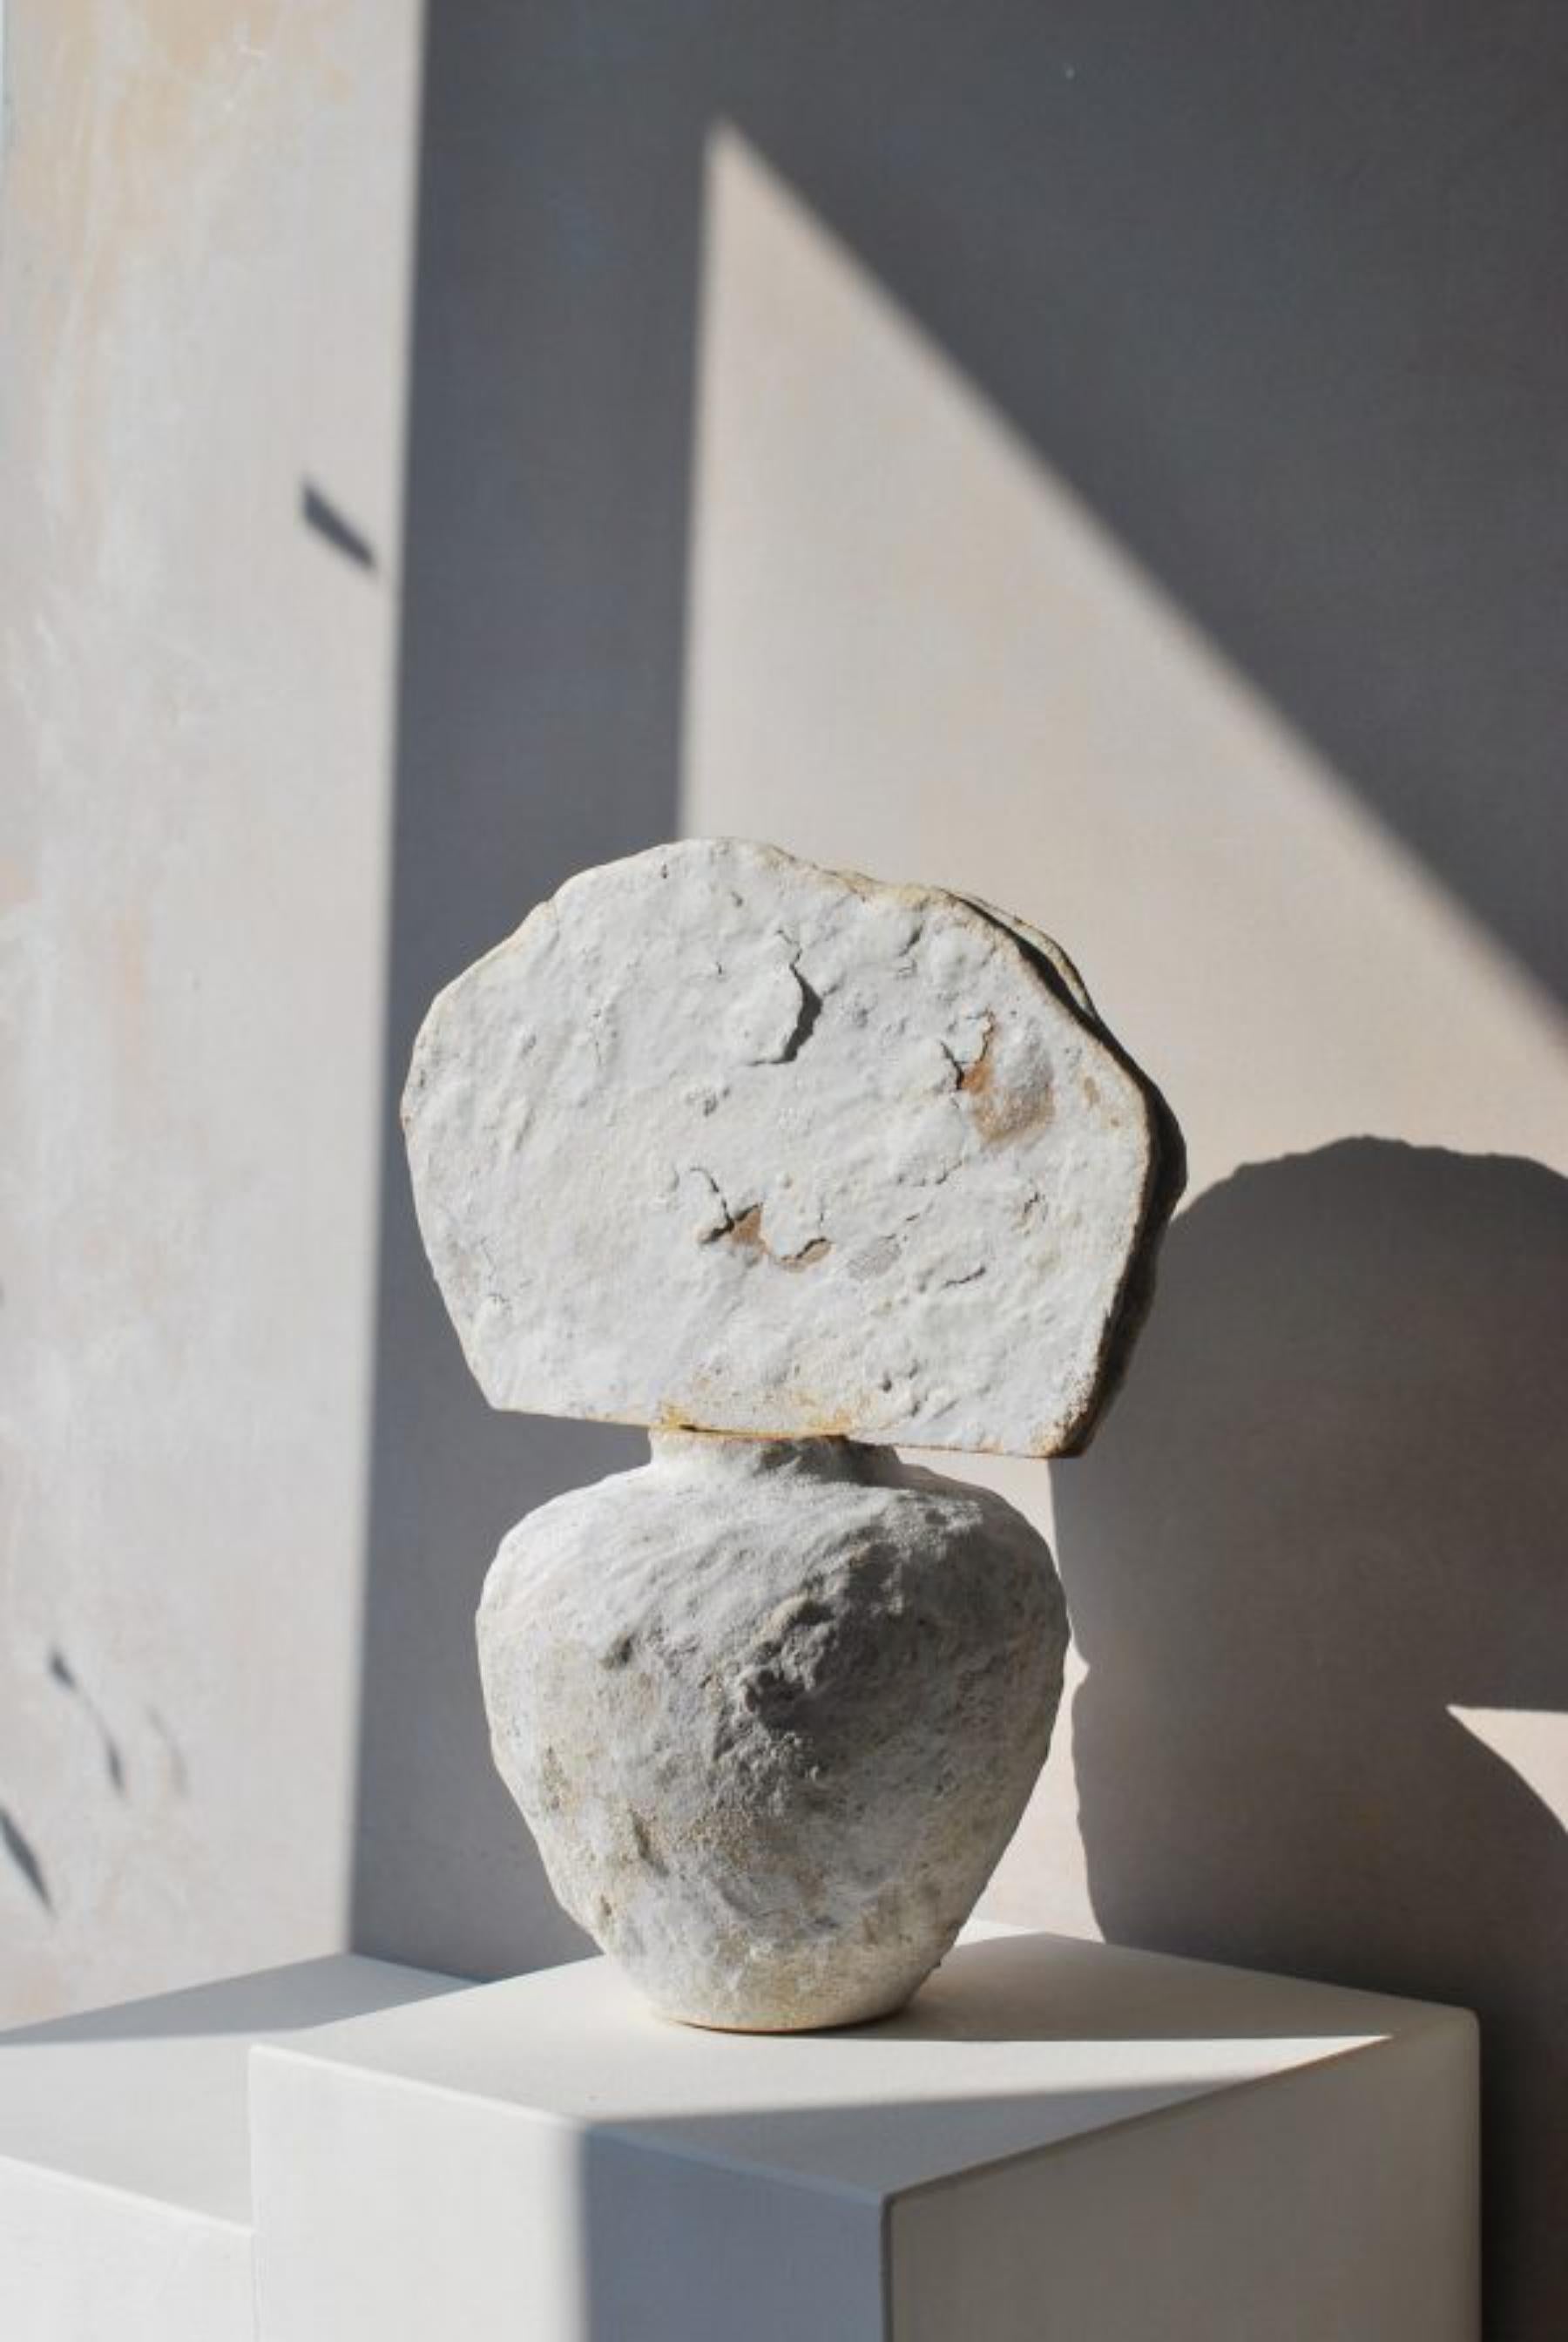 Grand vase en grès par Moïo Studio
Pièce unique
Dimensions : L 32 x D 18 x H 38 cm
MATERIAL : Glaçure blanche et porcelaine sur grès fauve

Moïo Studio est le studio d'art céramique basé à Berlin de l'artiste franco-palestinienne Maia Beyrouti. Il a